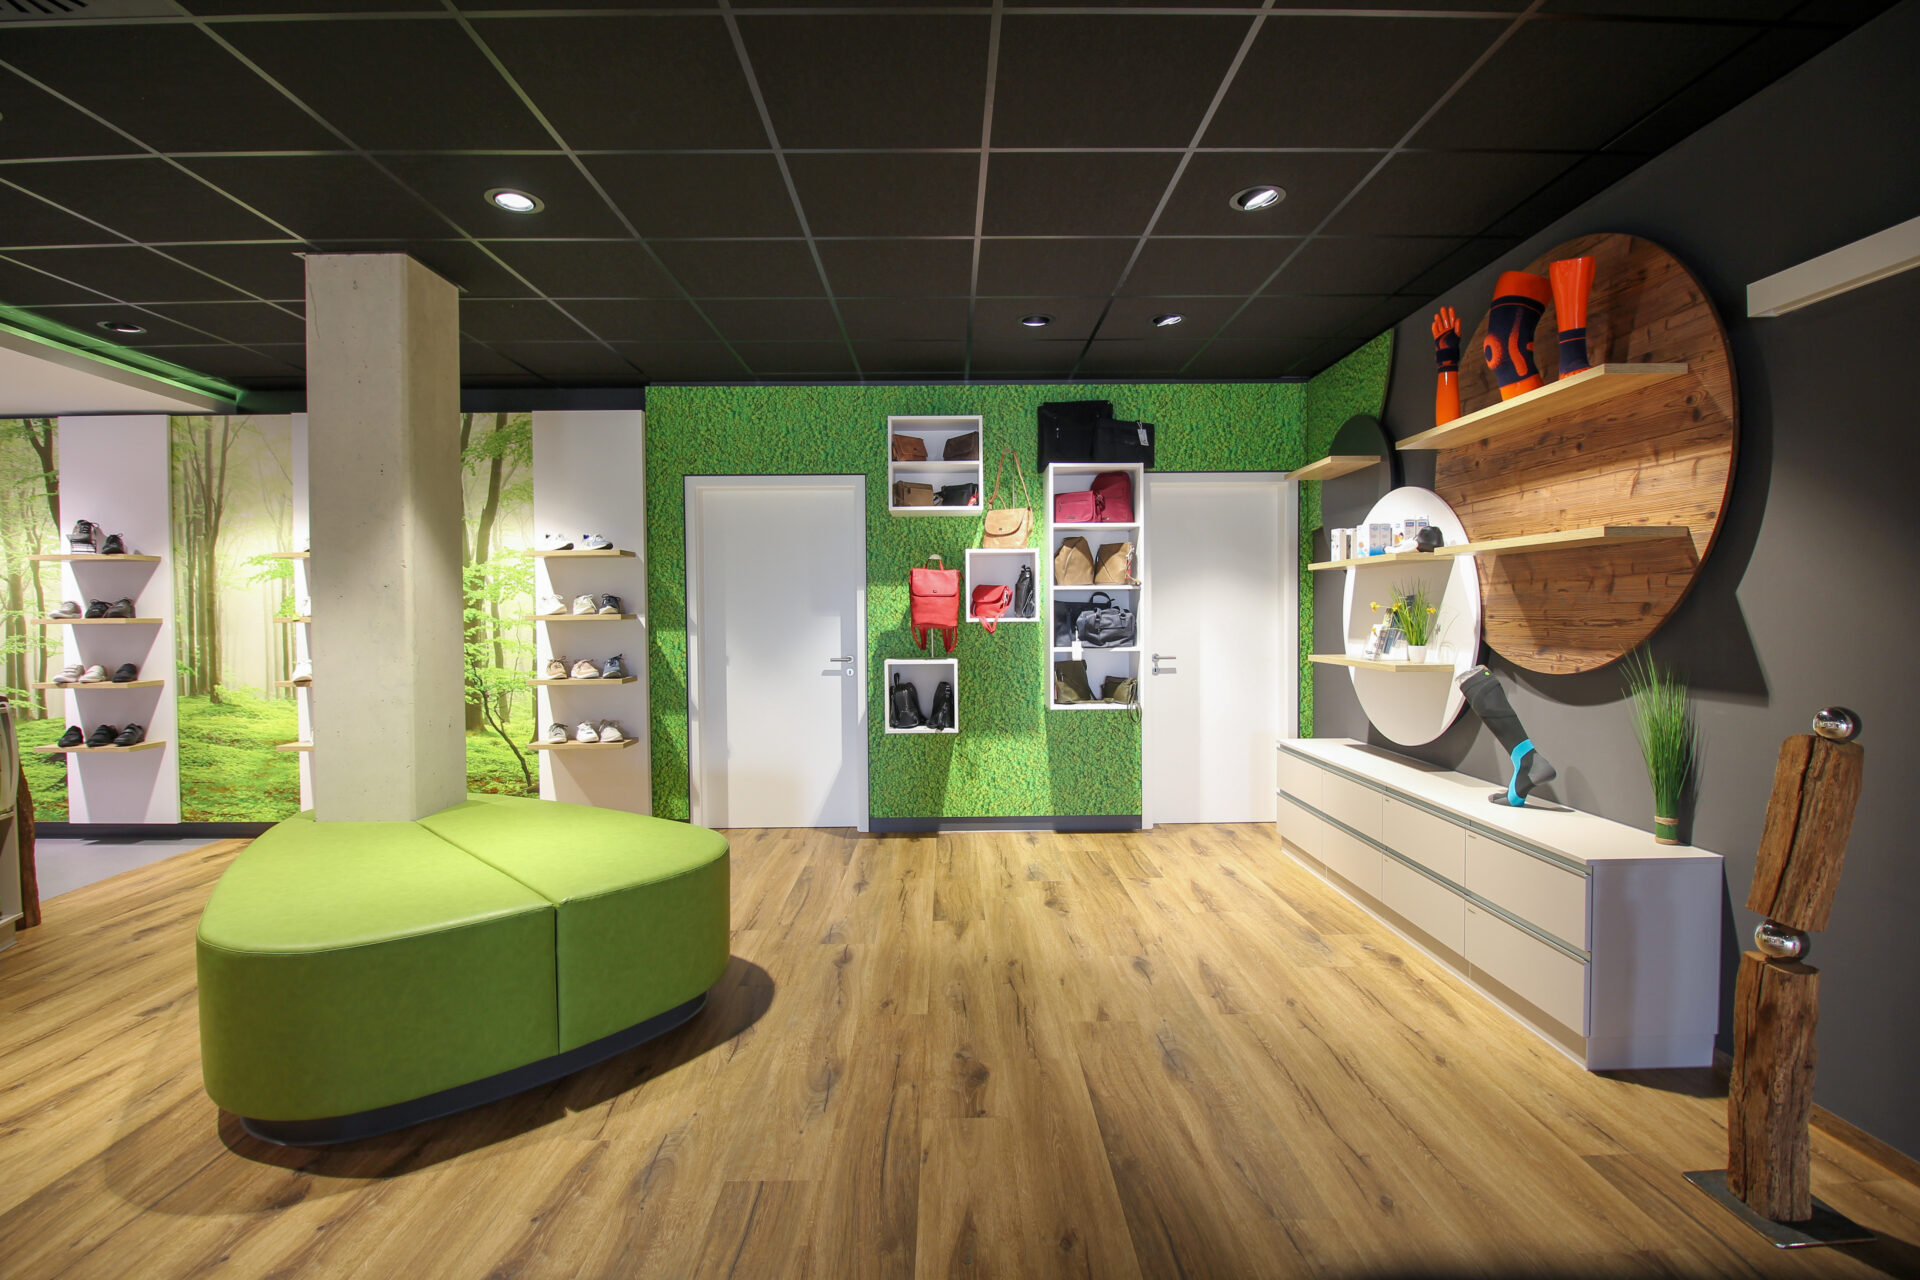 Lymph & Vein Center, Elsenfeld, Germany, Retail furniture, shelves